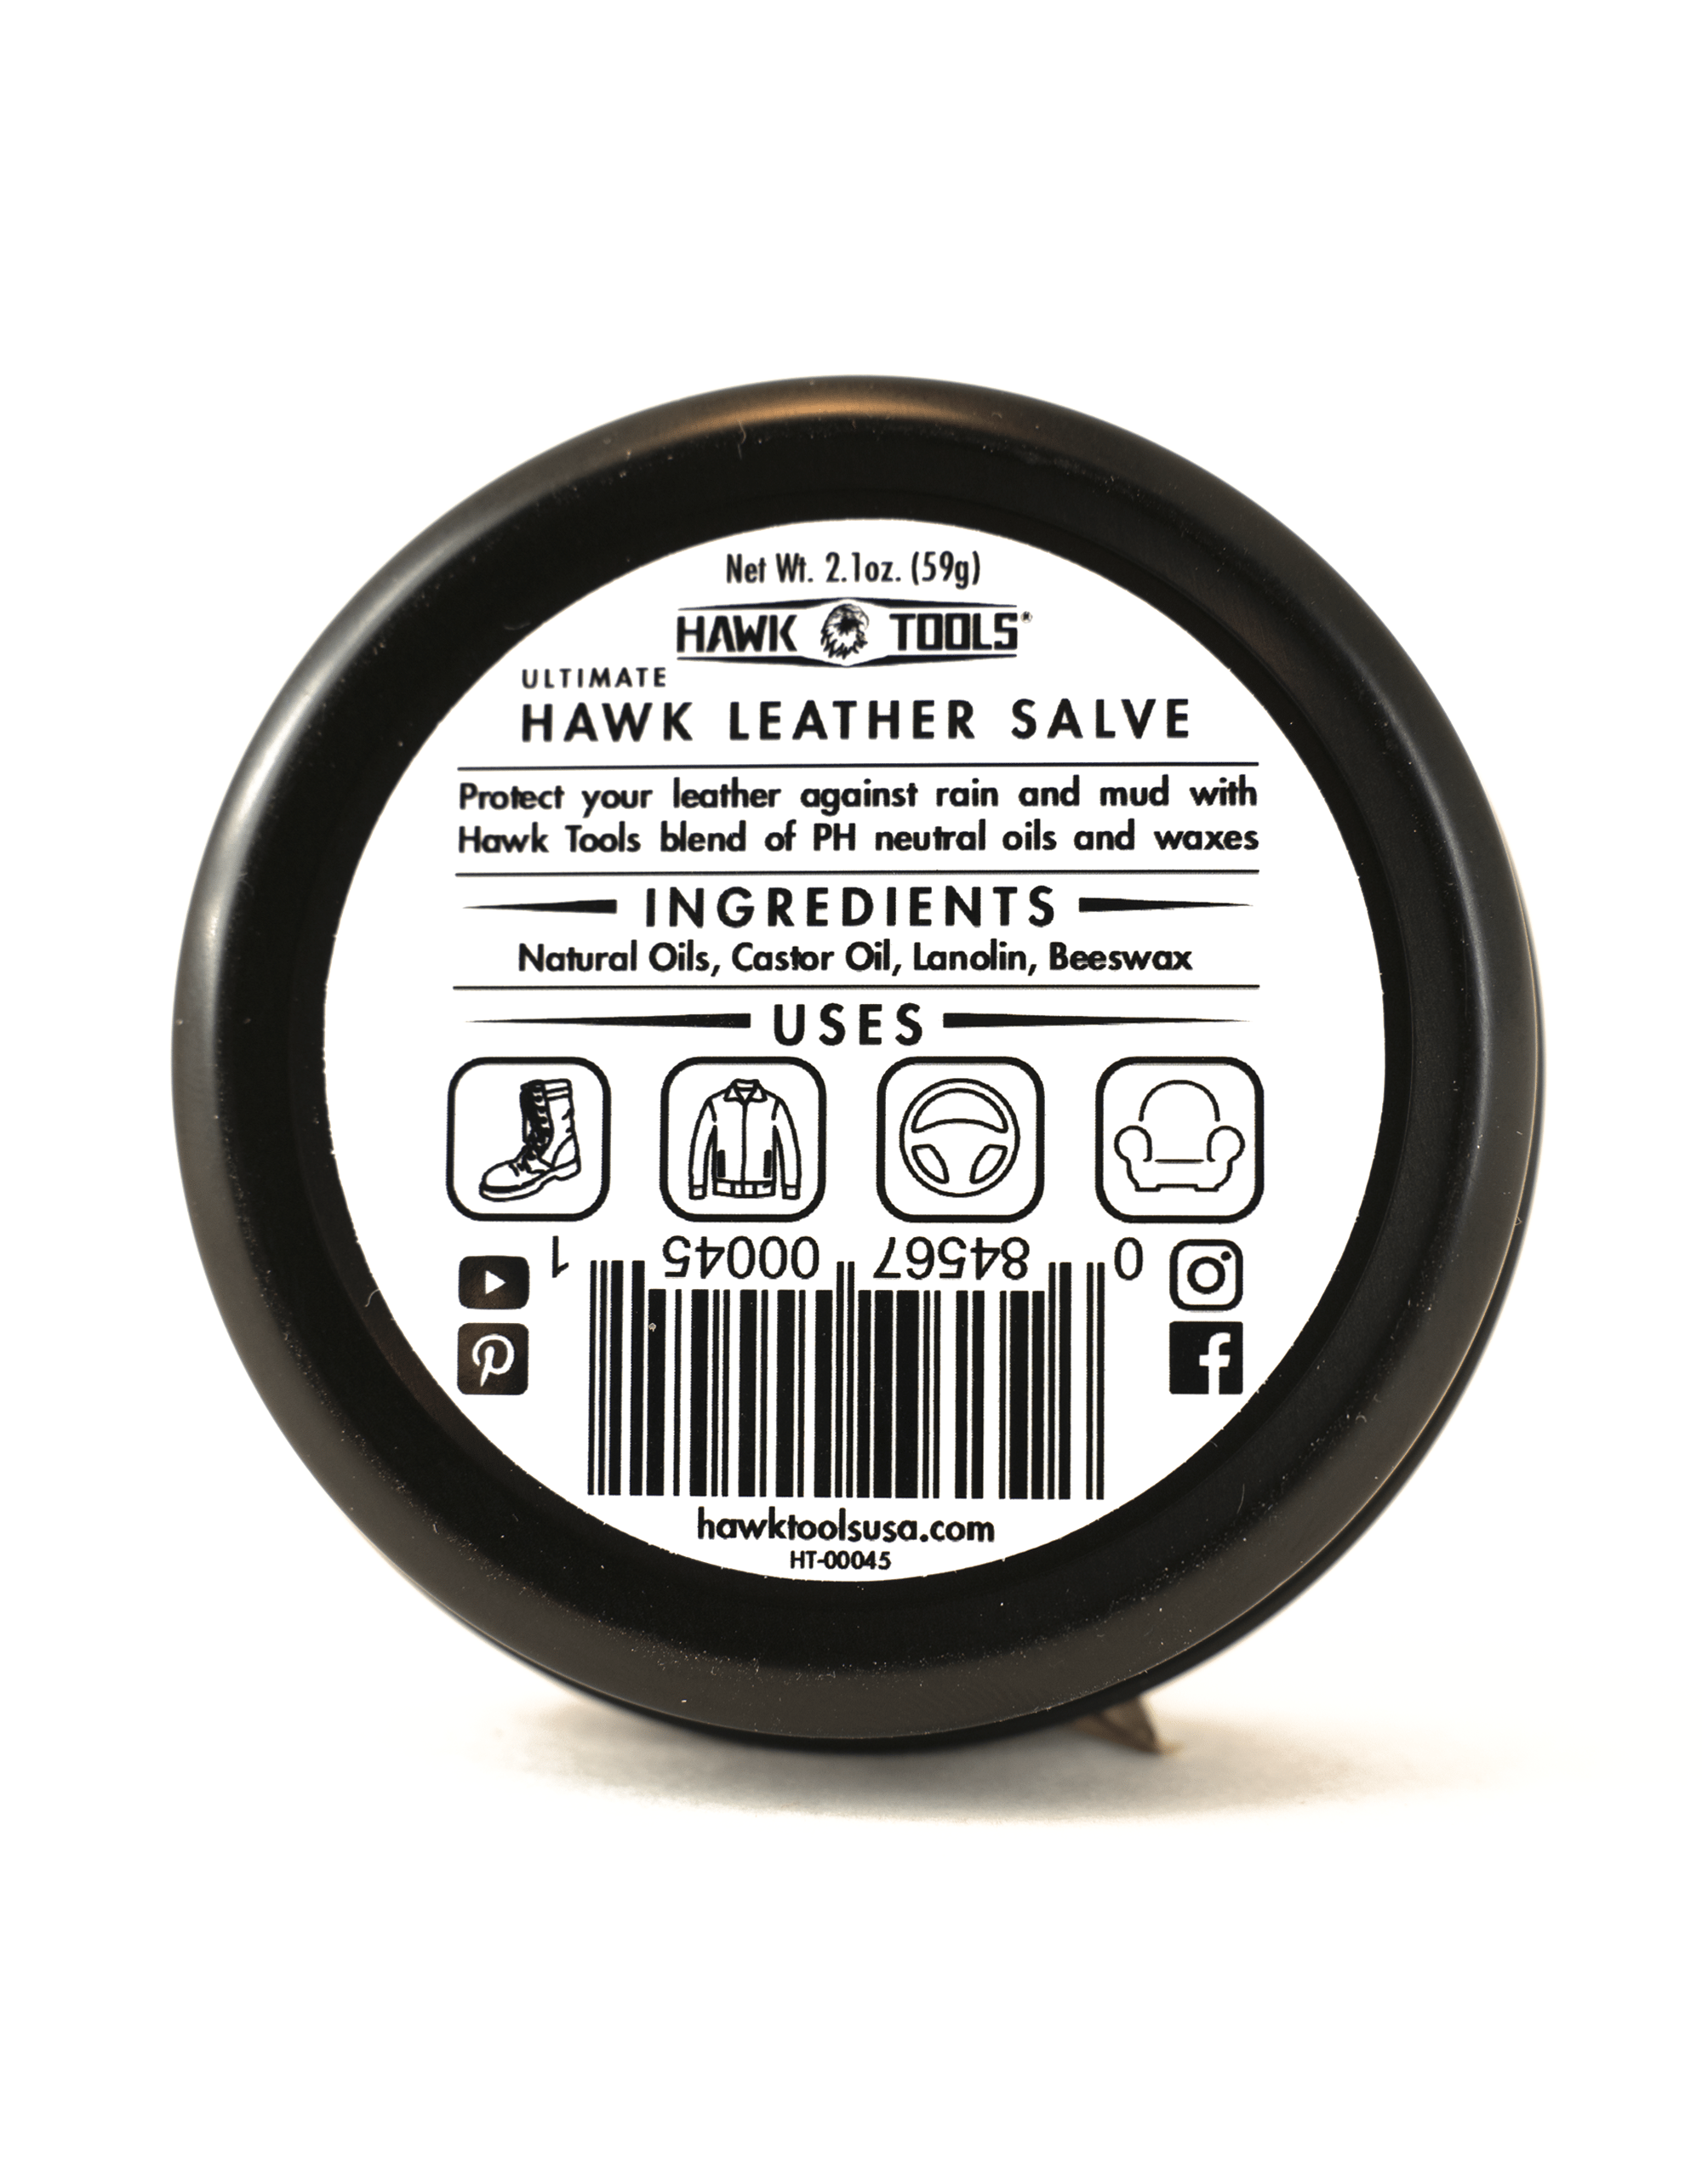 Leather salve label